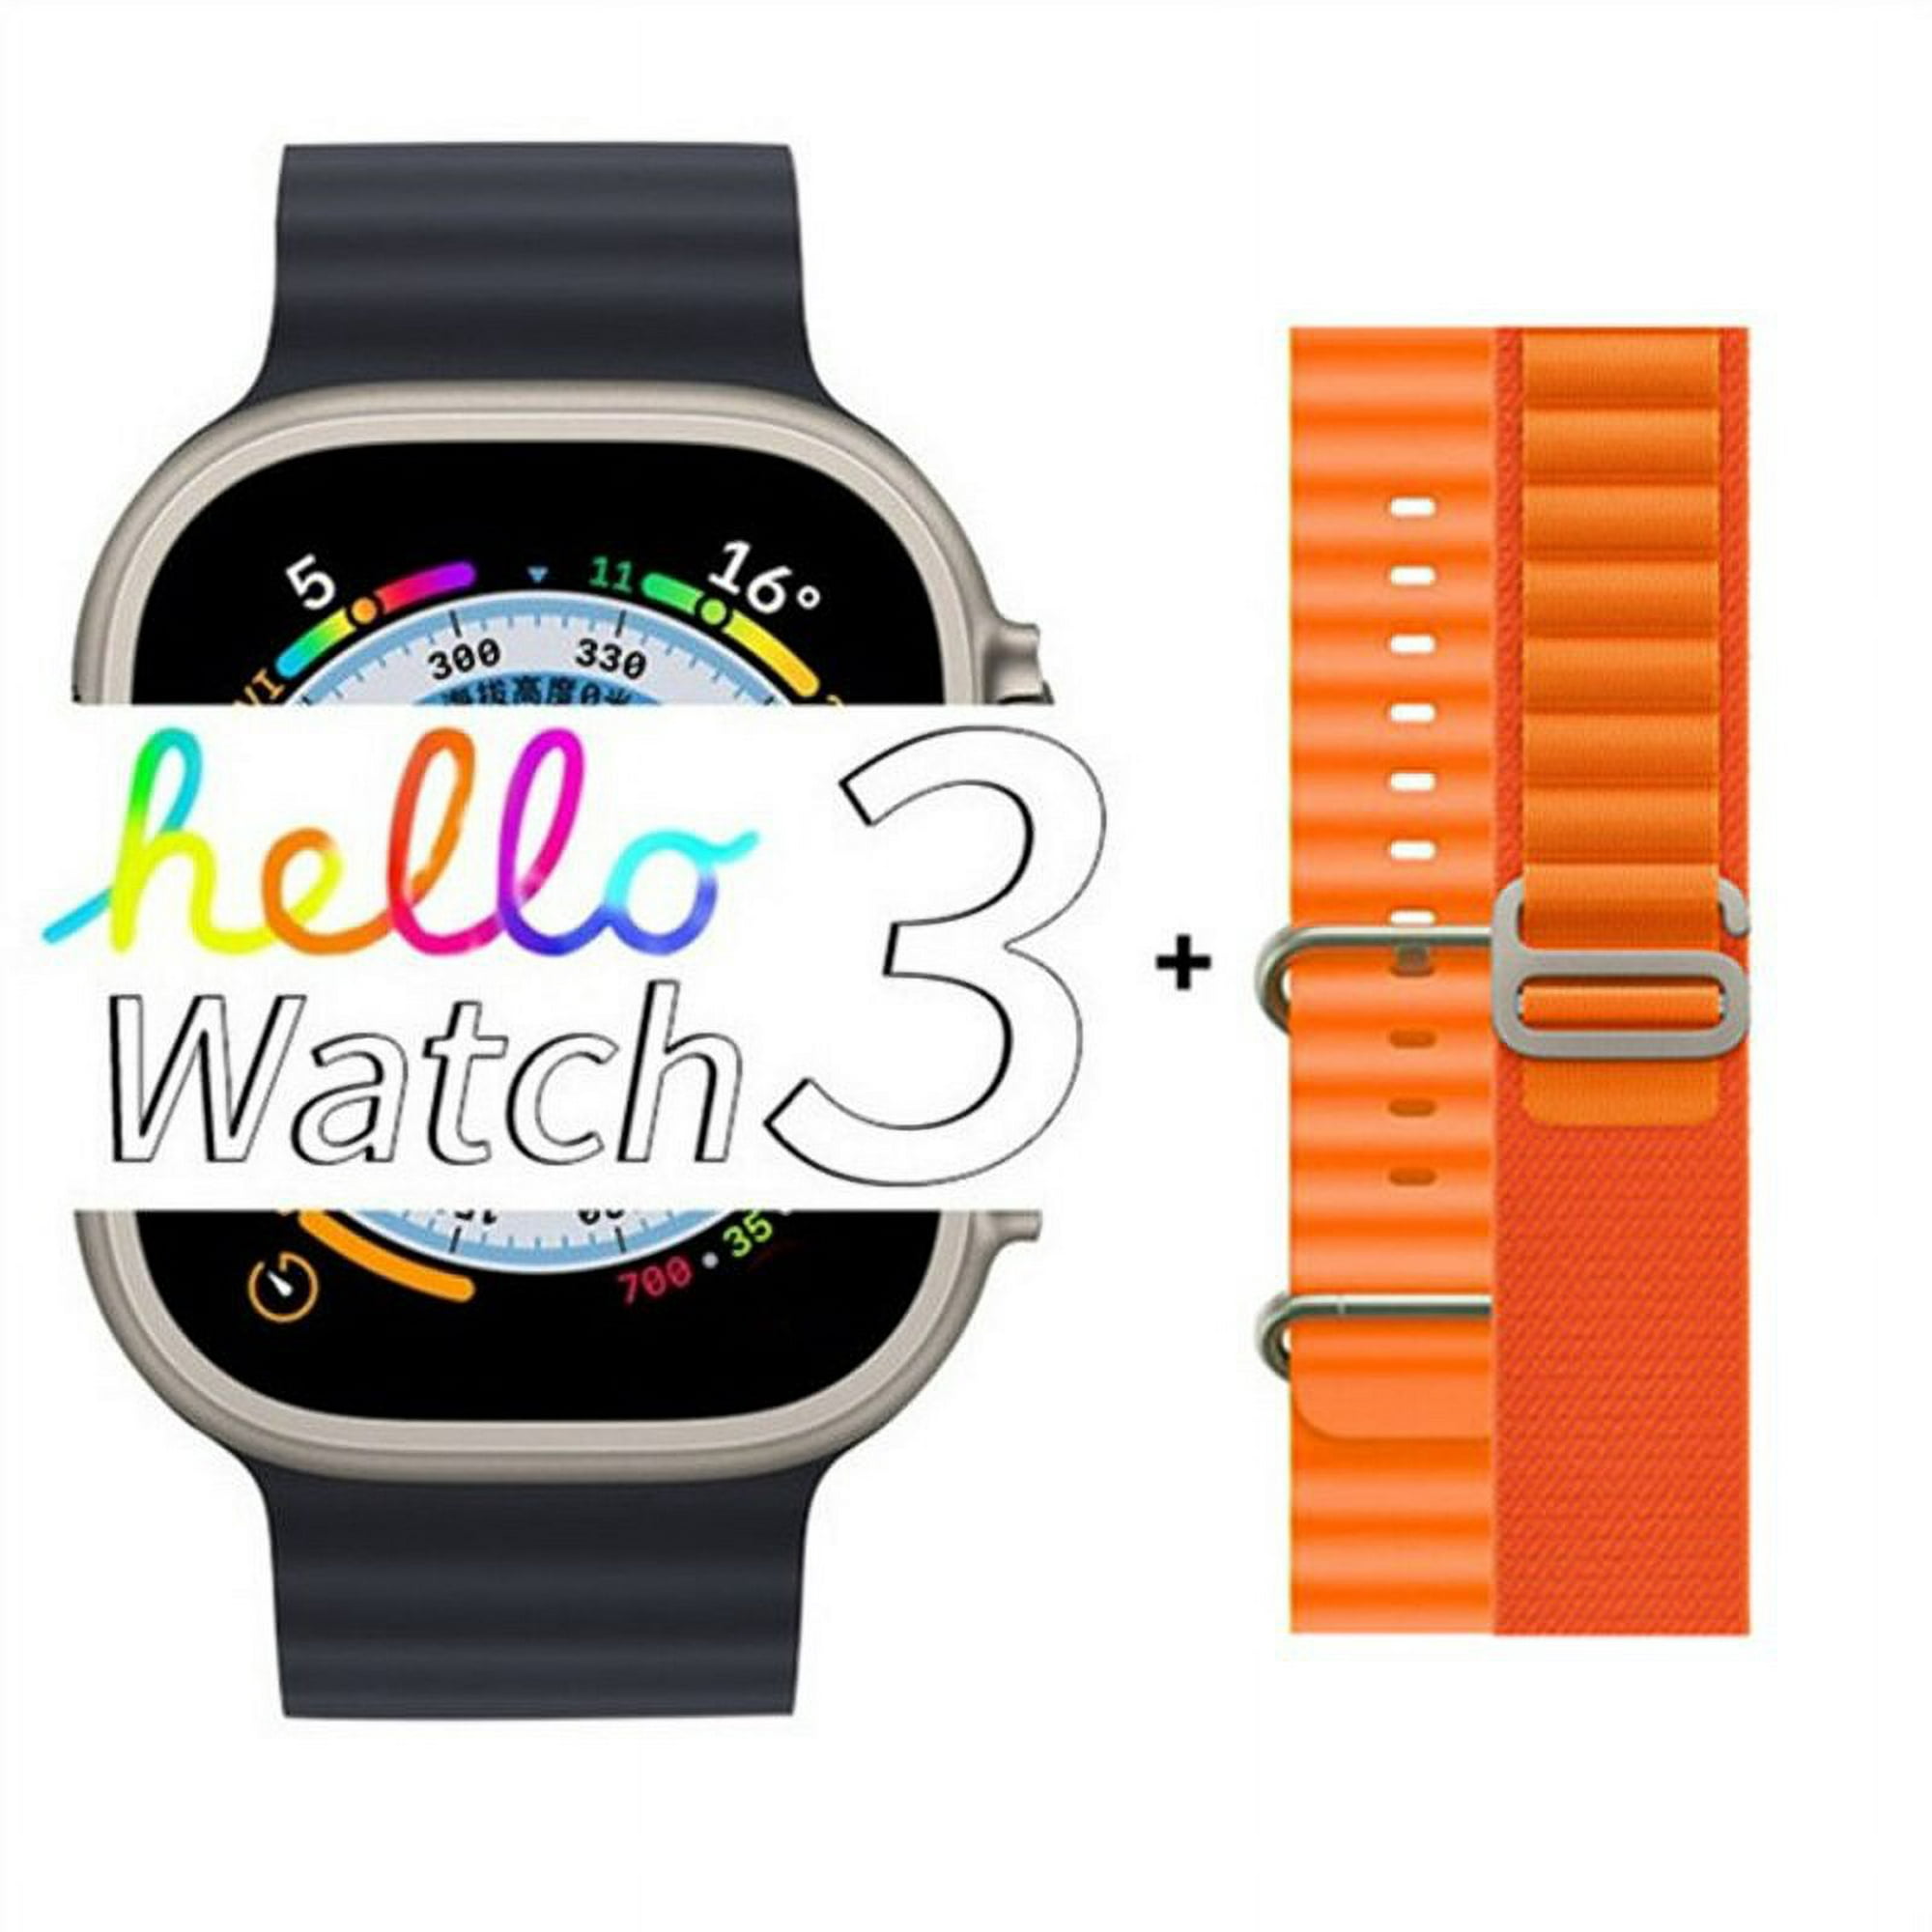 Smartwatch Iconic +, el reloj inteligente para niños más vendido de